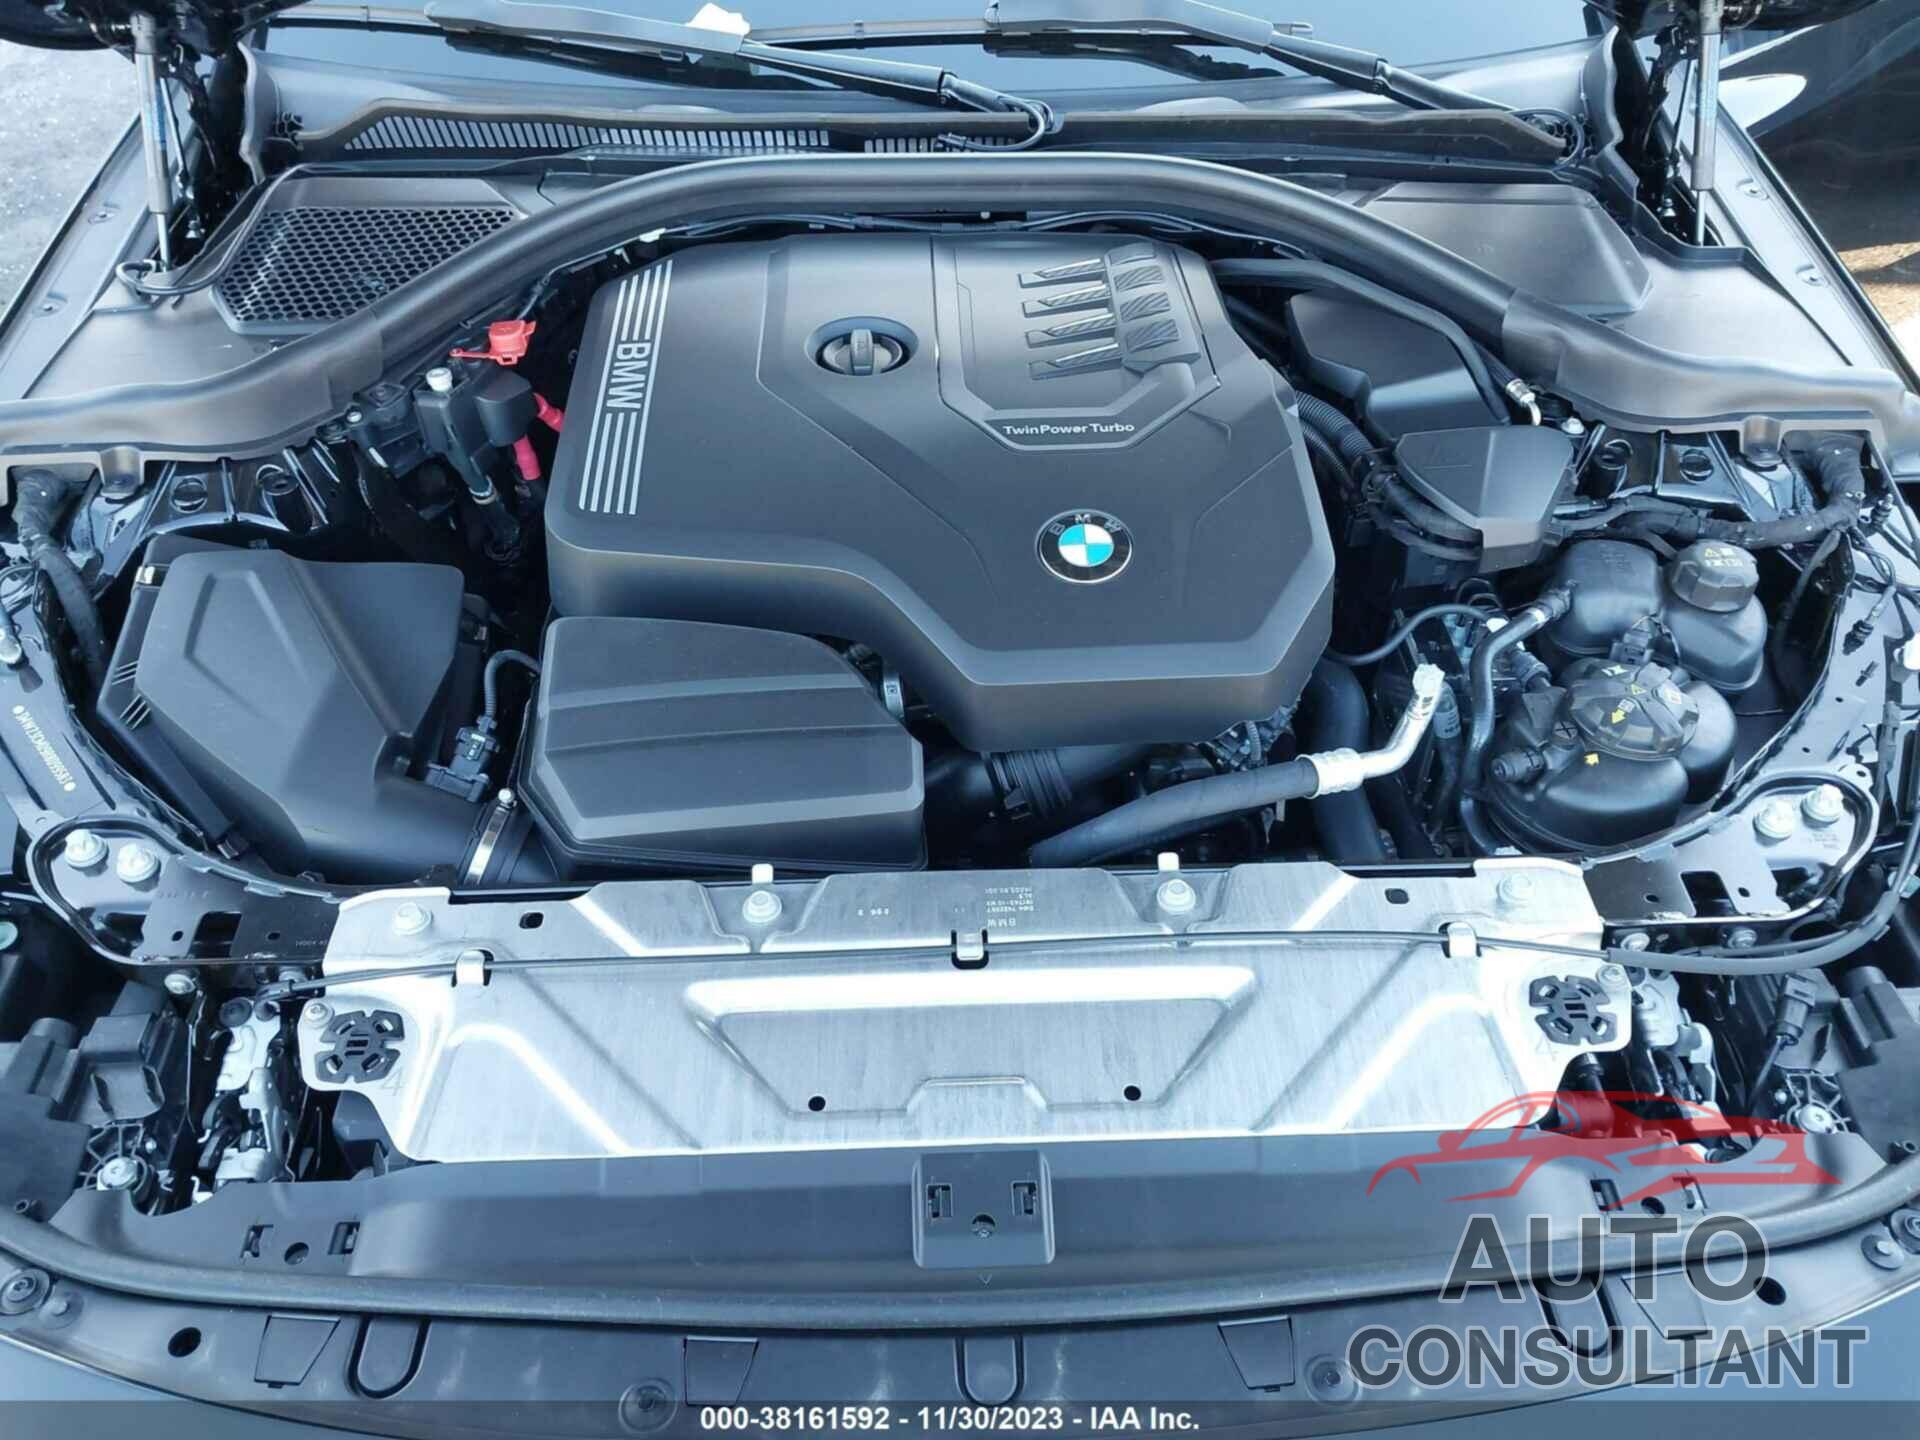 BMW 2 SERIES 2024 - 3MW23CM09R8D99583